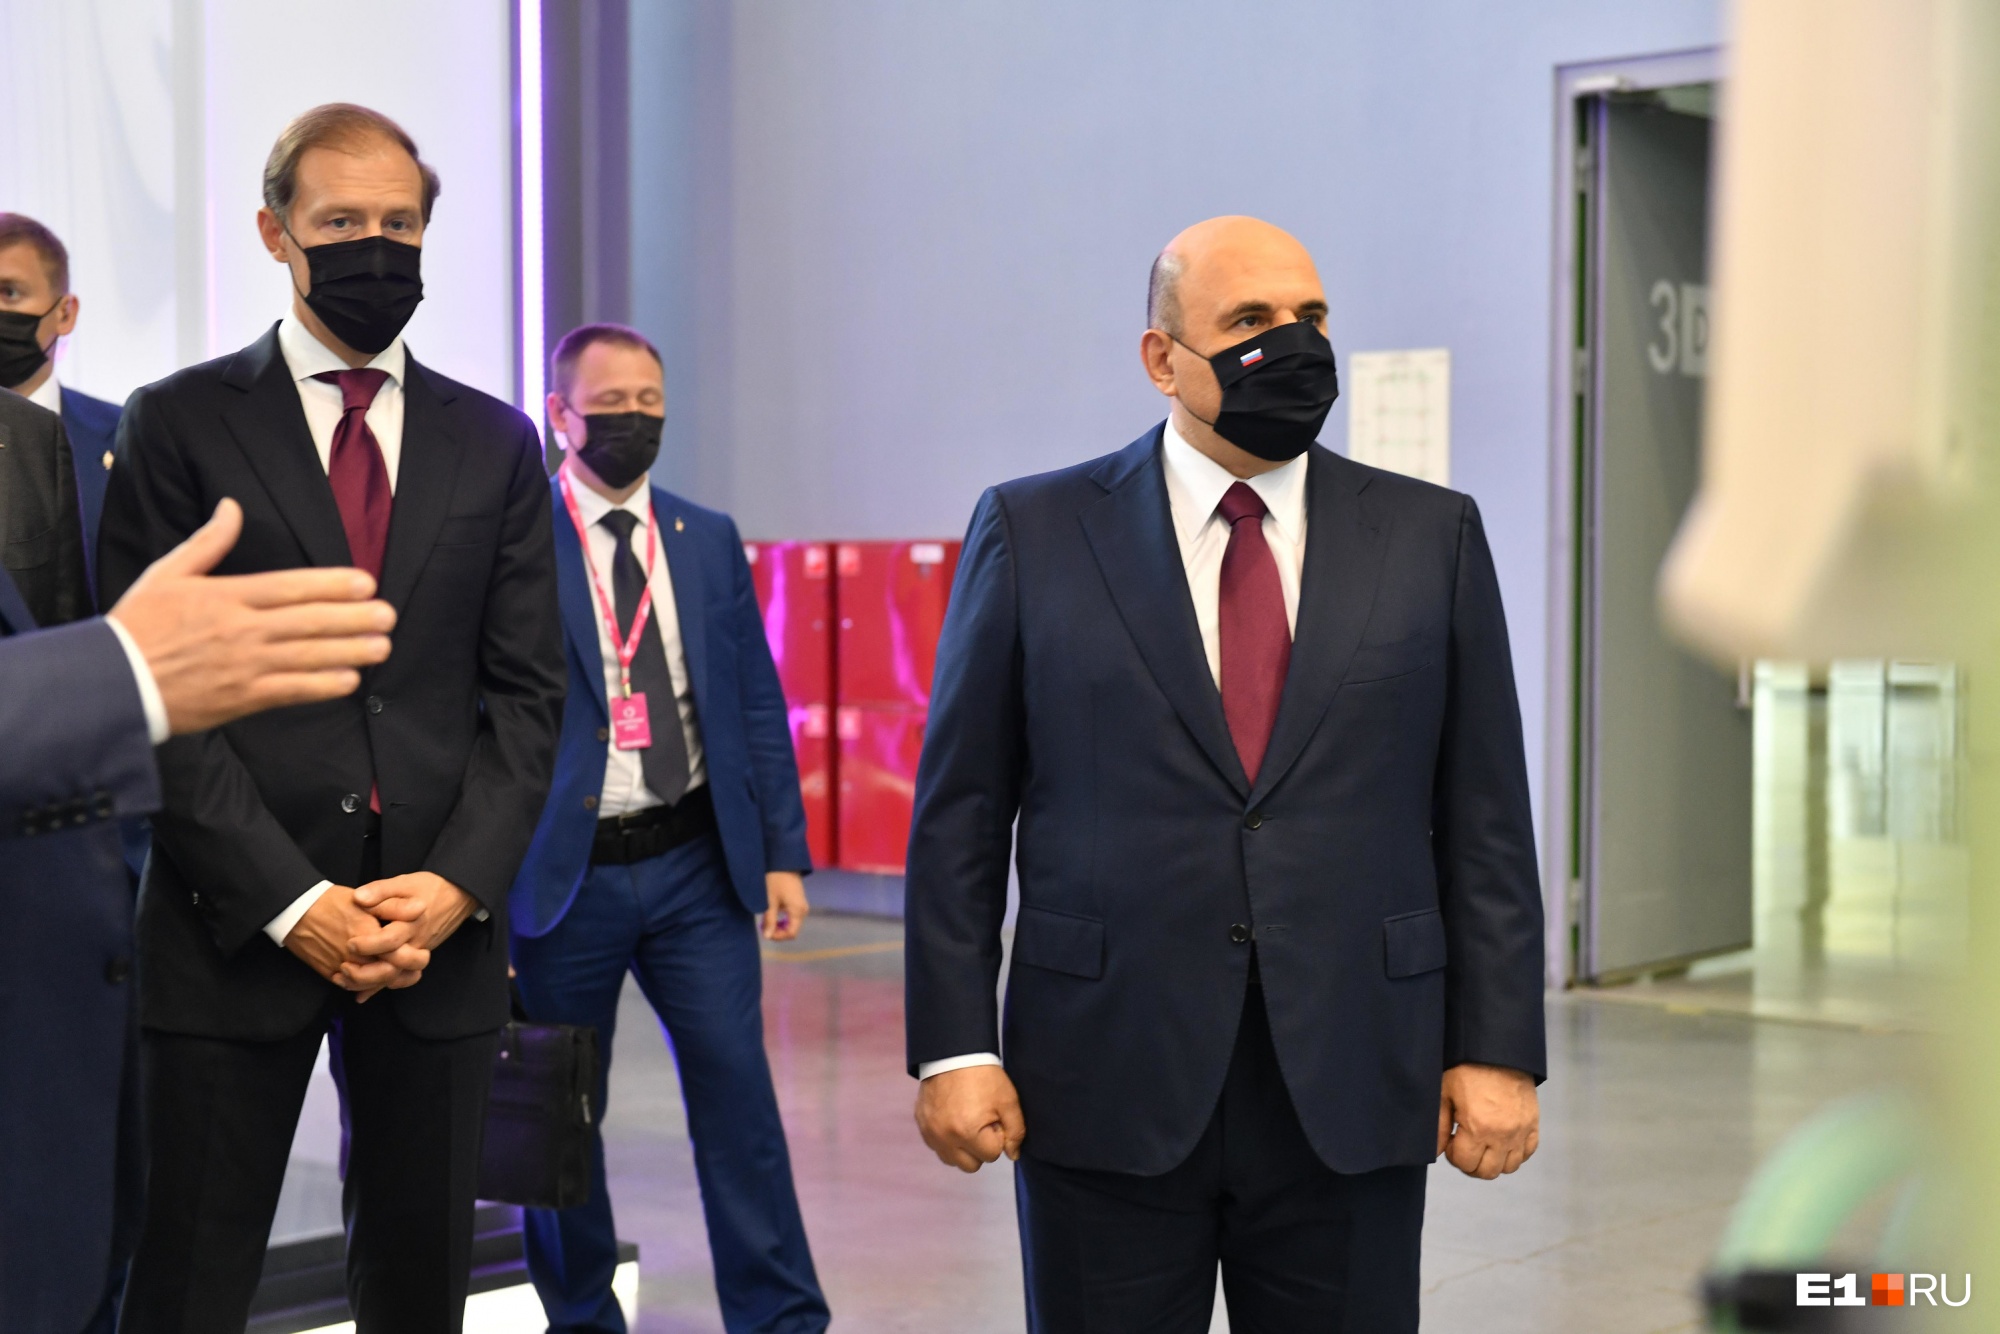 Премьер-министр Михаил Мишустин выделит Забайкалью деньги на дороги и центр единоборств